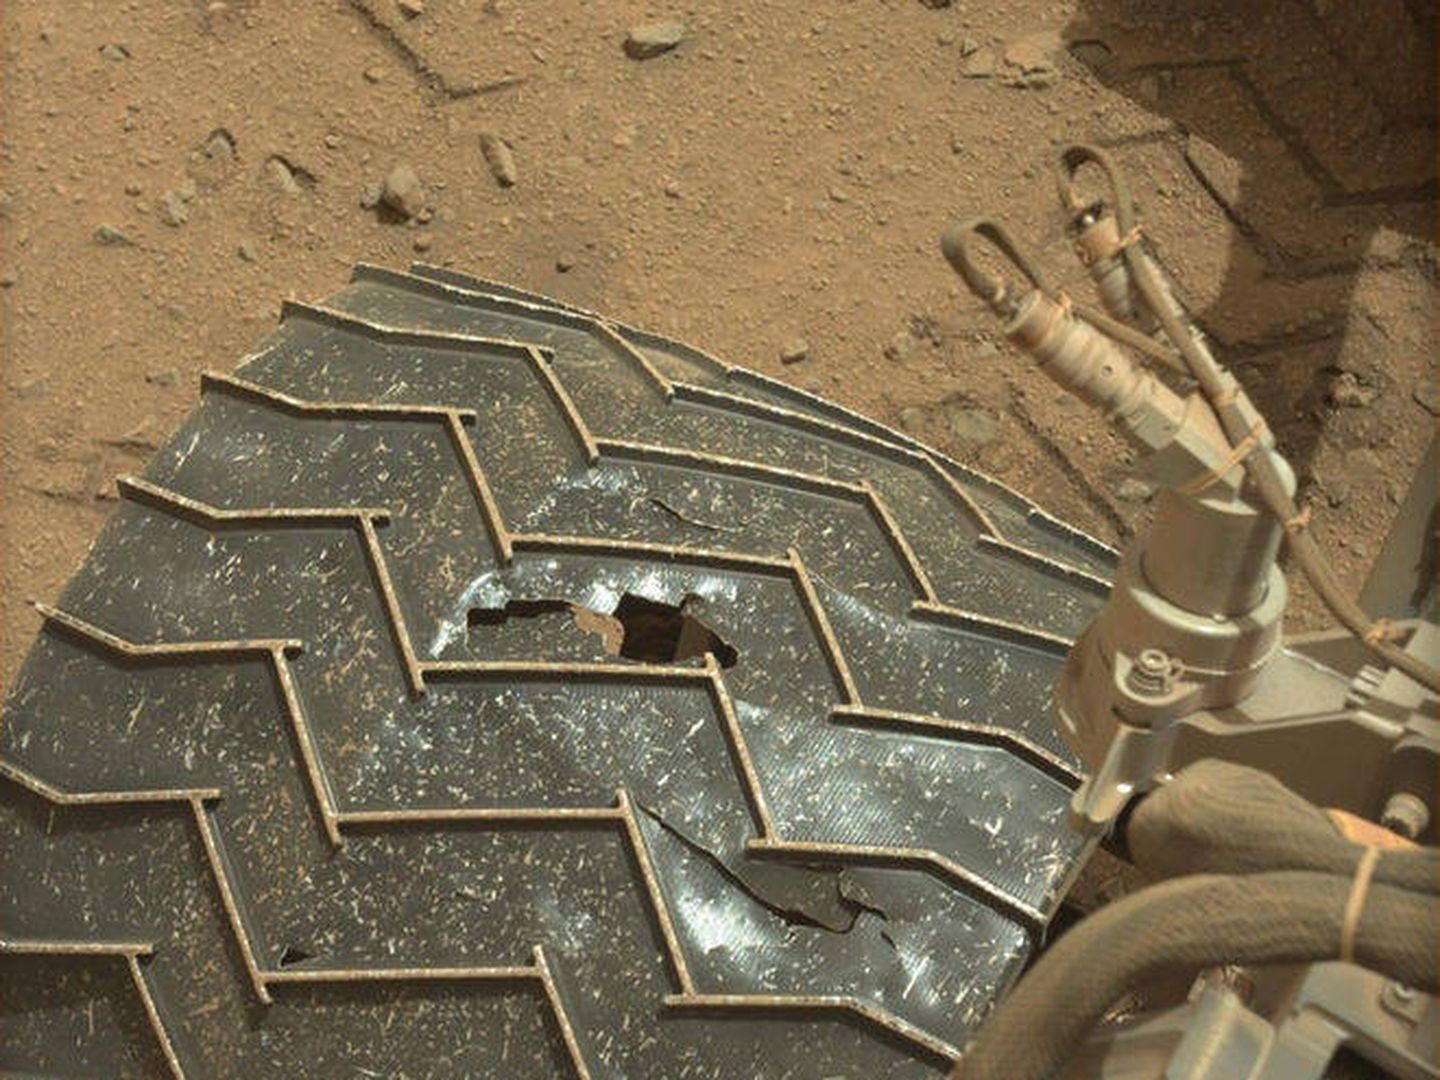 Las ruedas de la Curiosity ya muestran los efectos del trabajo en Marte. (NASA)